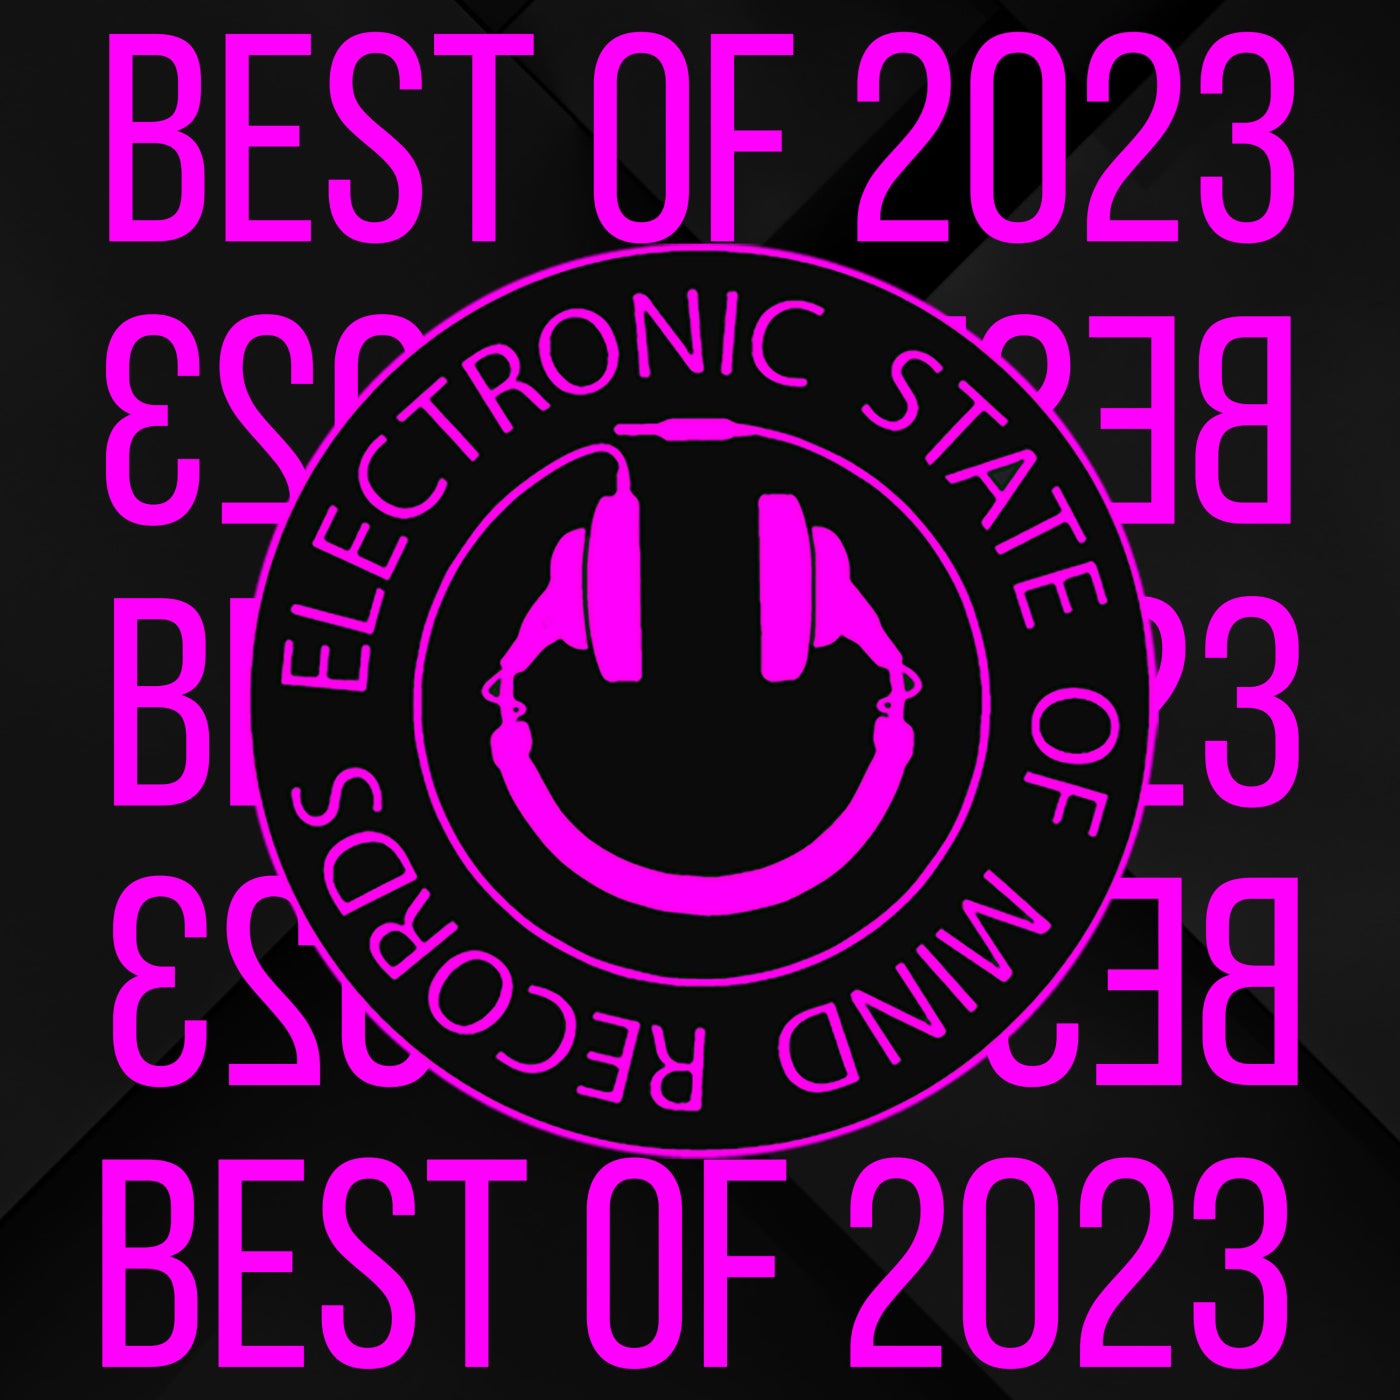 Best of 2023